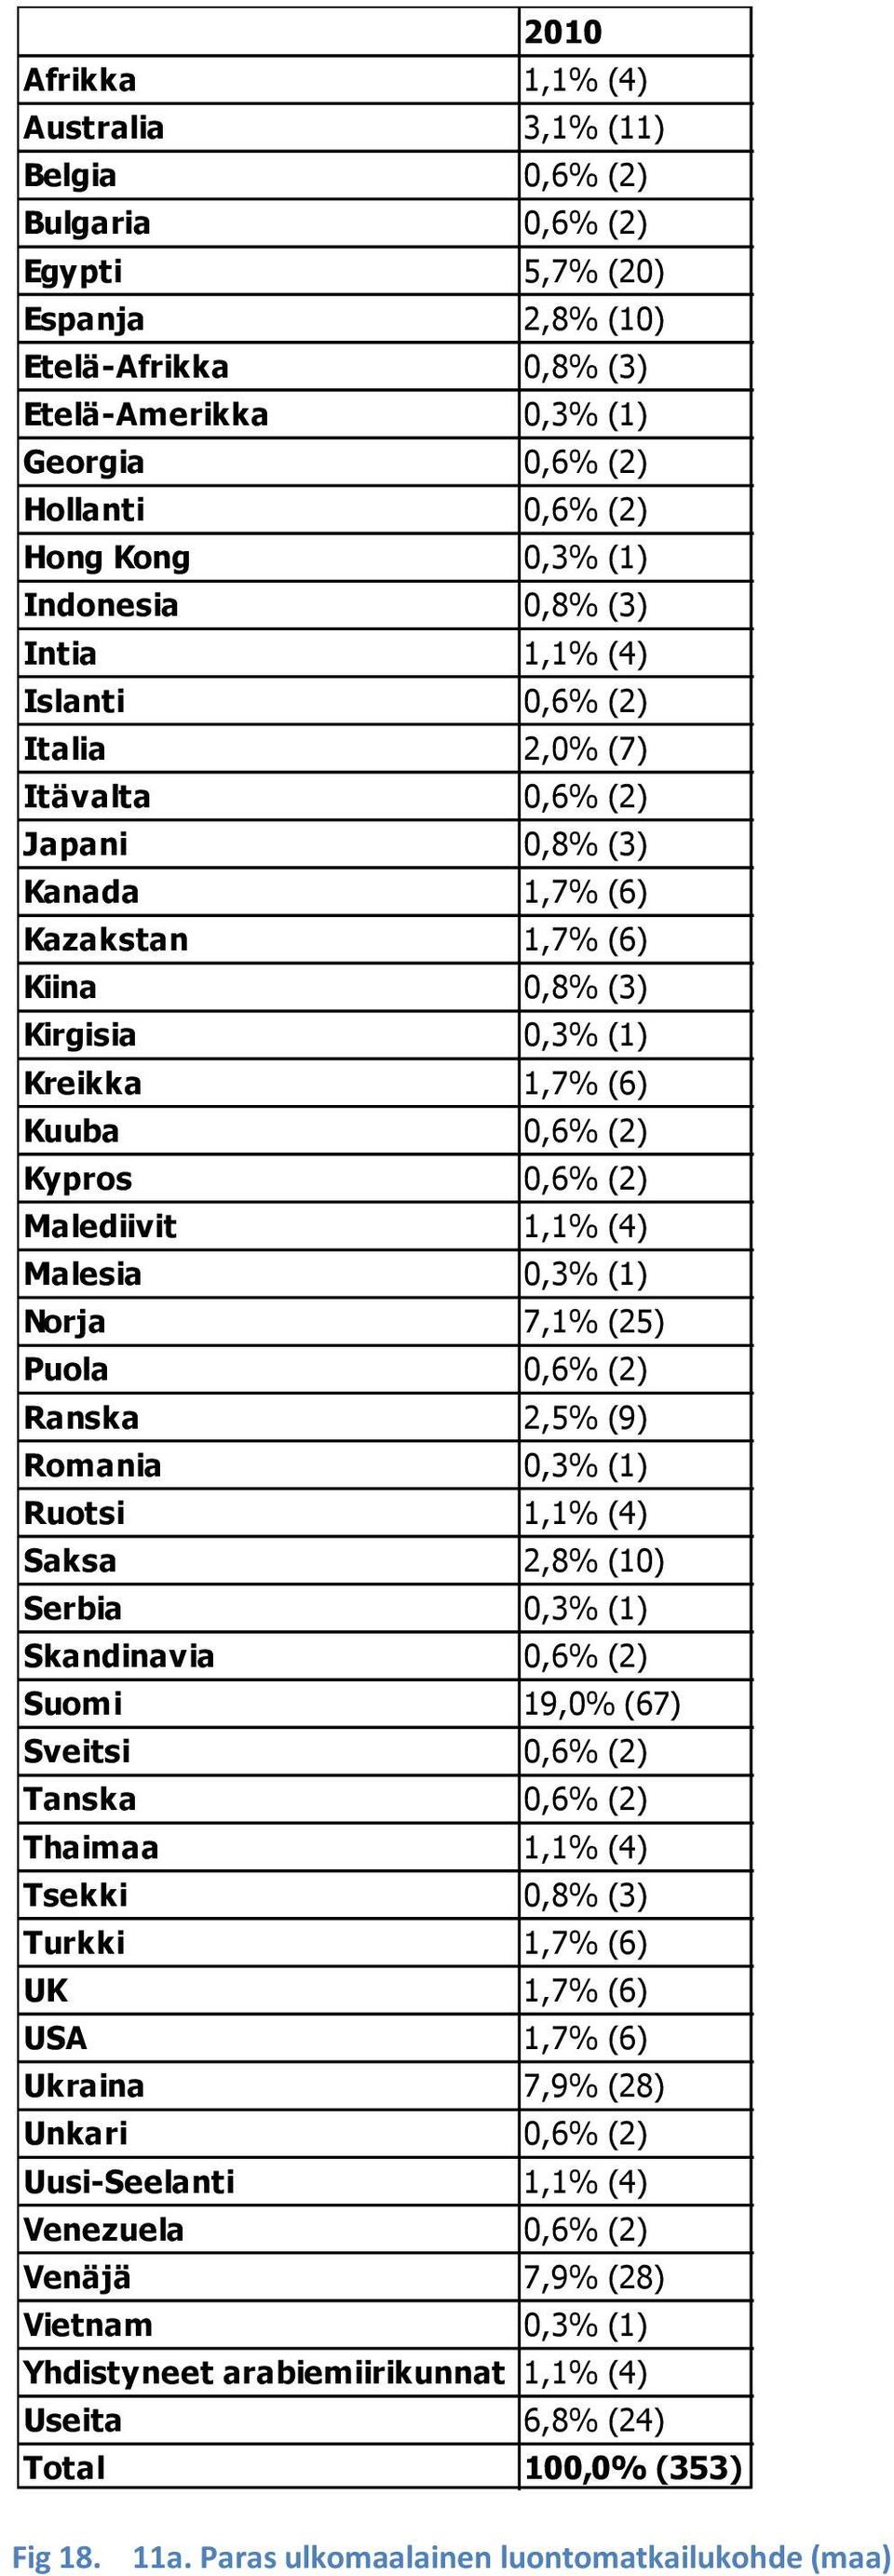 Kuuba 0,6% (2) Kypros 0,6% (2) Malediivit 1,1% (4) Malesia 0,3% (1) Norja 7,1% (25) Puola 0,6% (2) Ranska 2,5% (9) Romania 0,3% (1) Ruotsi 1,1% (4) Saksa 2,8% (10) Serbia 0,3% (1) Skandinavia 0,6%